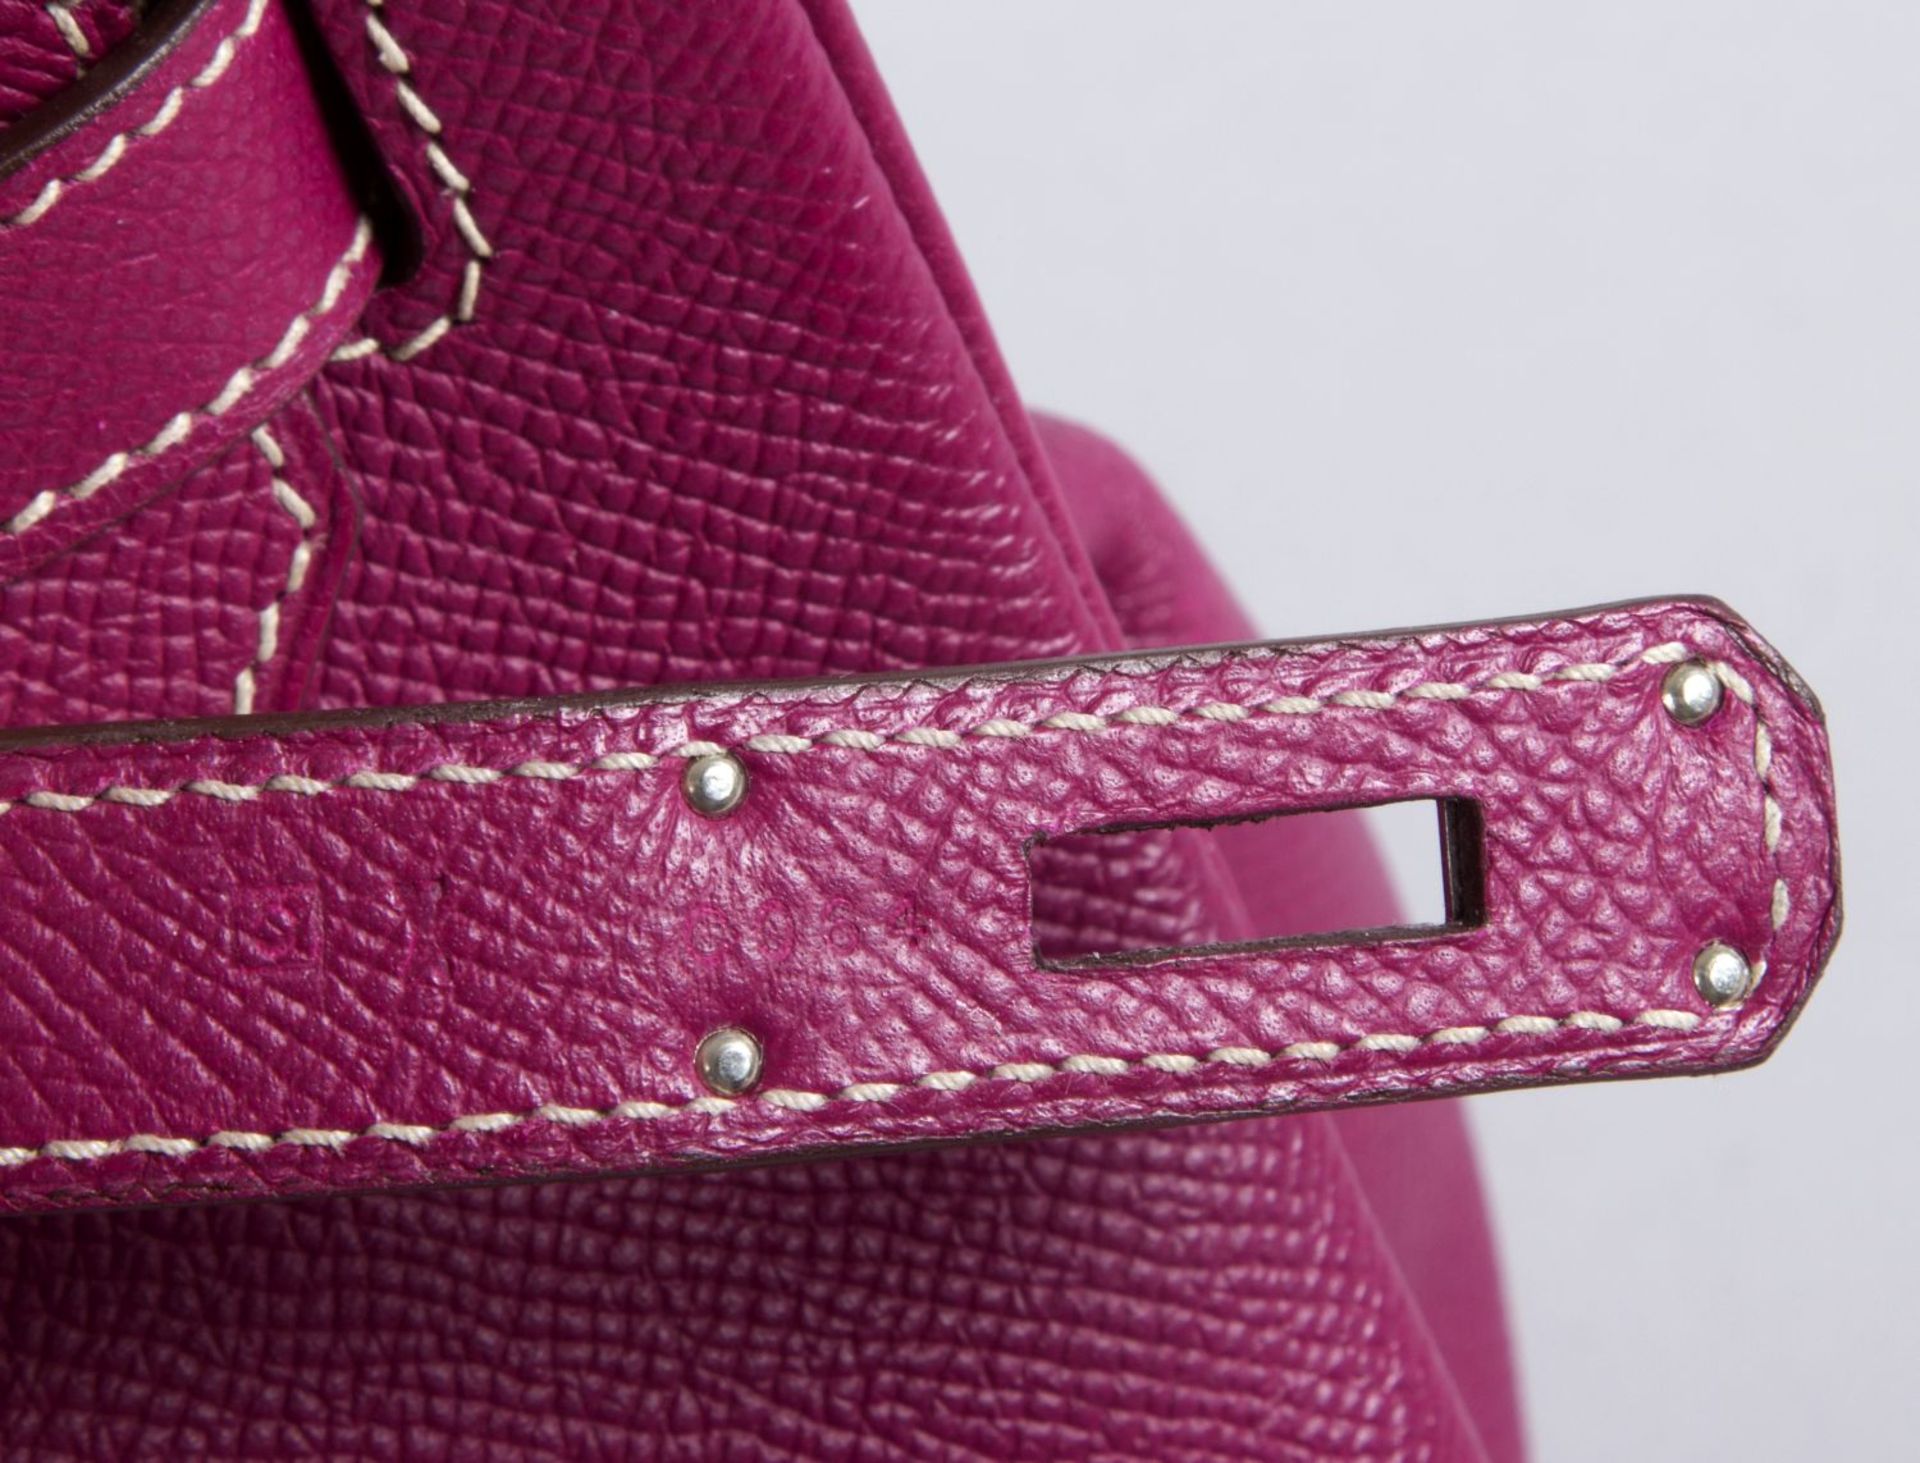 Hermès ''Birkin Bag 35'' Kalbsleder in Fuchsia mit weißer Naht. Beschläge mit Palladiumauflage. Trap - Bild 3 aus 10